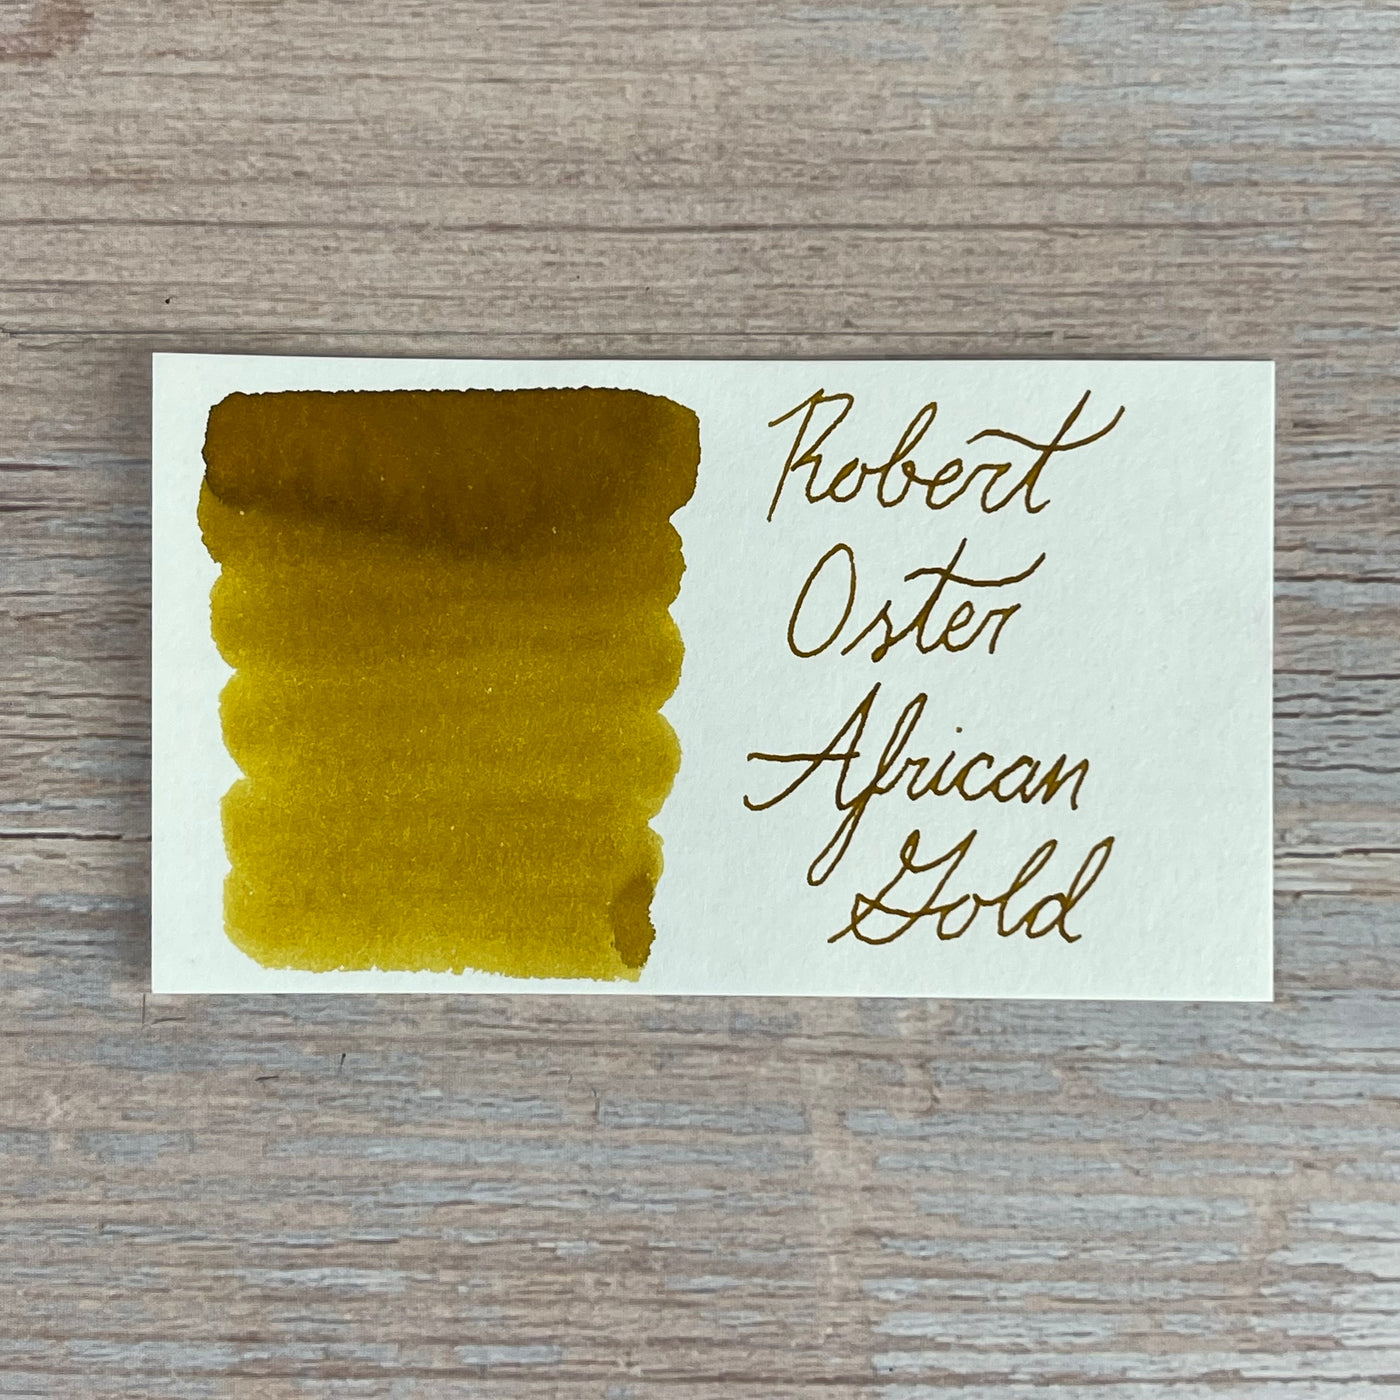 Robert Oster African Gold - 50ml Bottled Ink